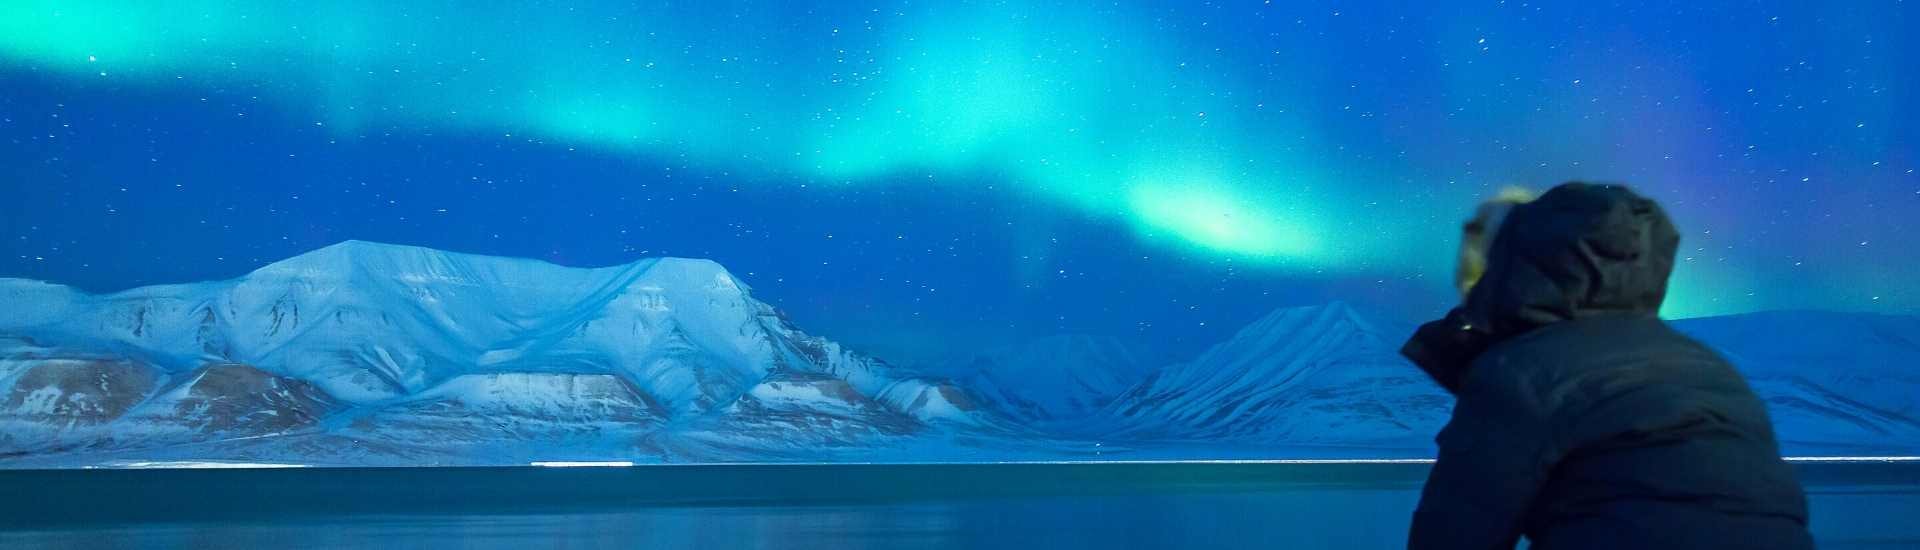 Vedere l'aurora boreale: tutto quello che devi sapere